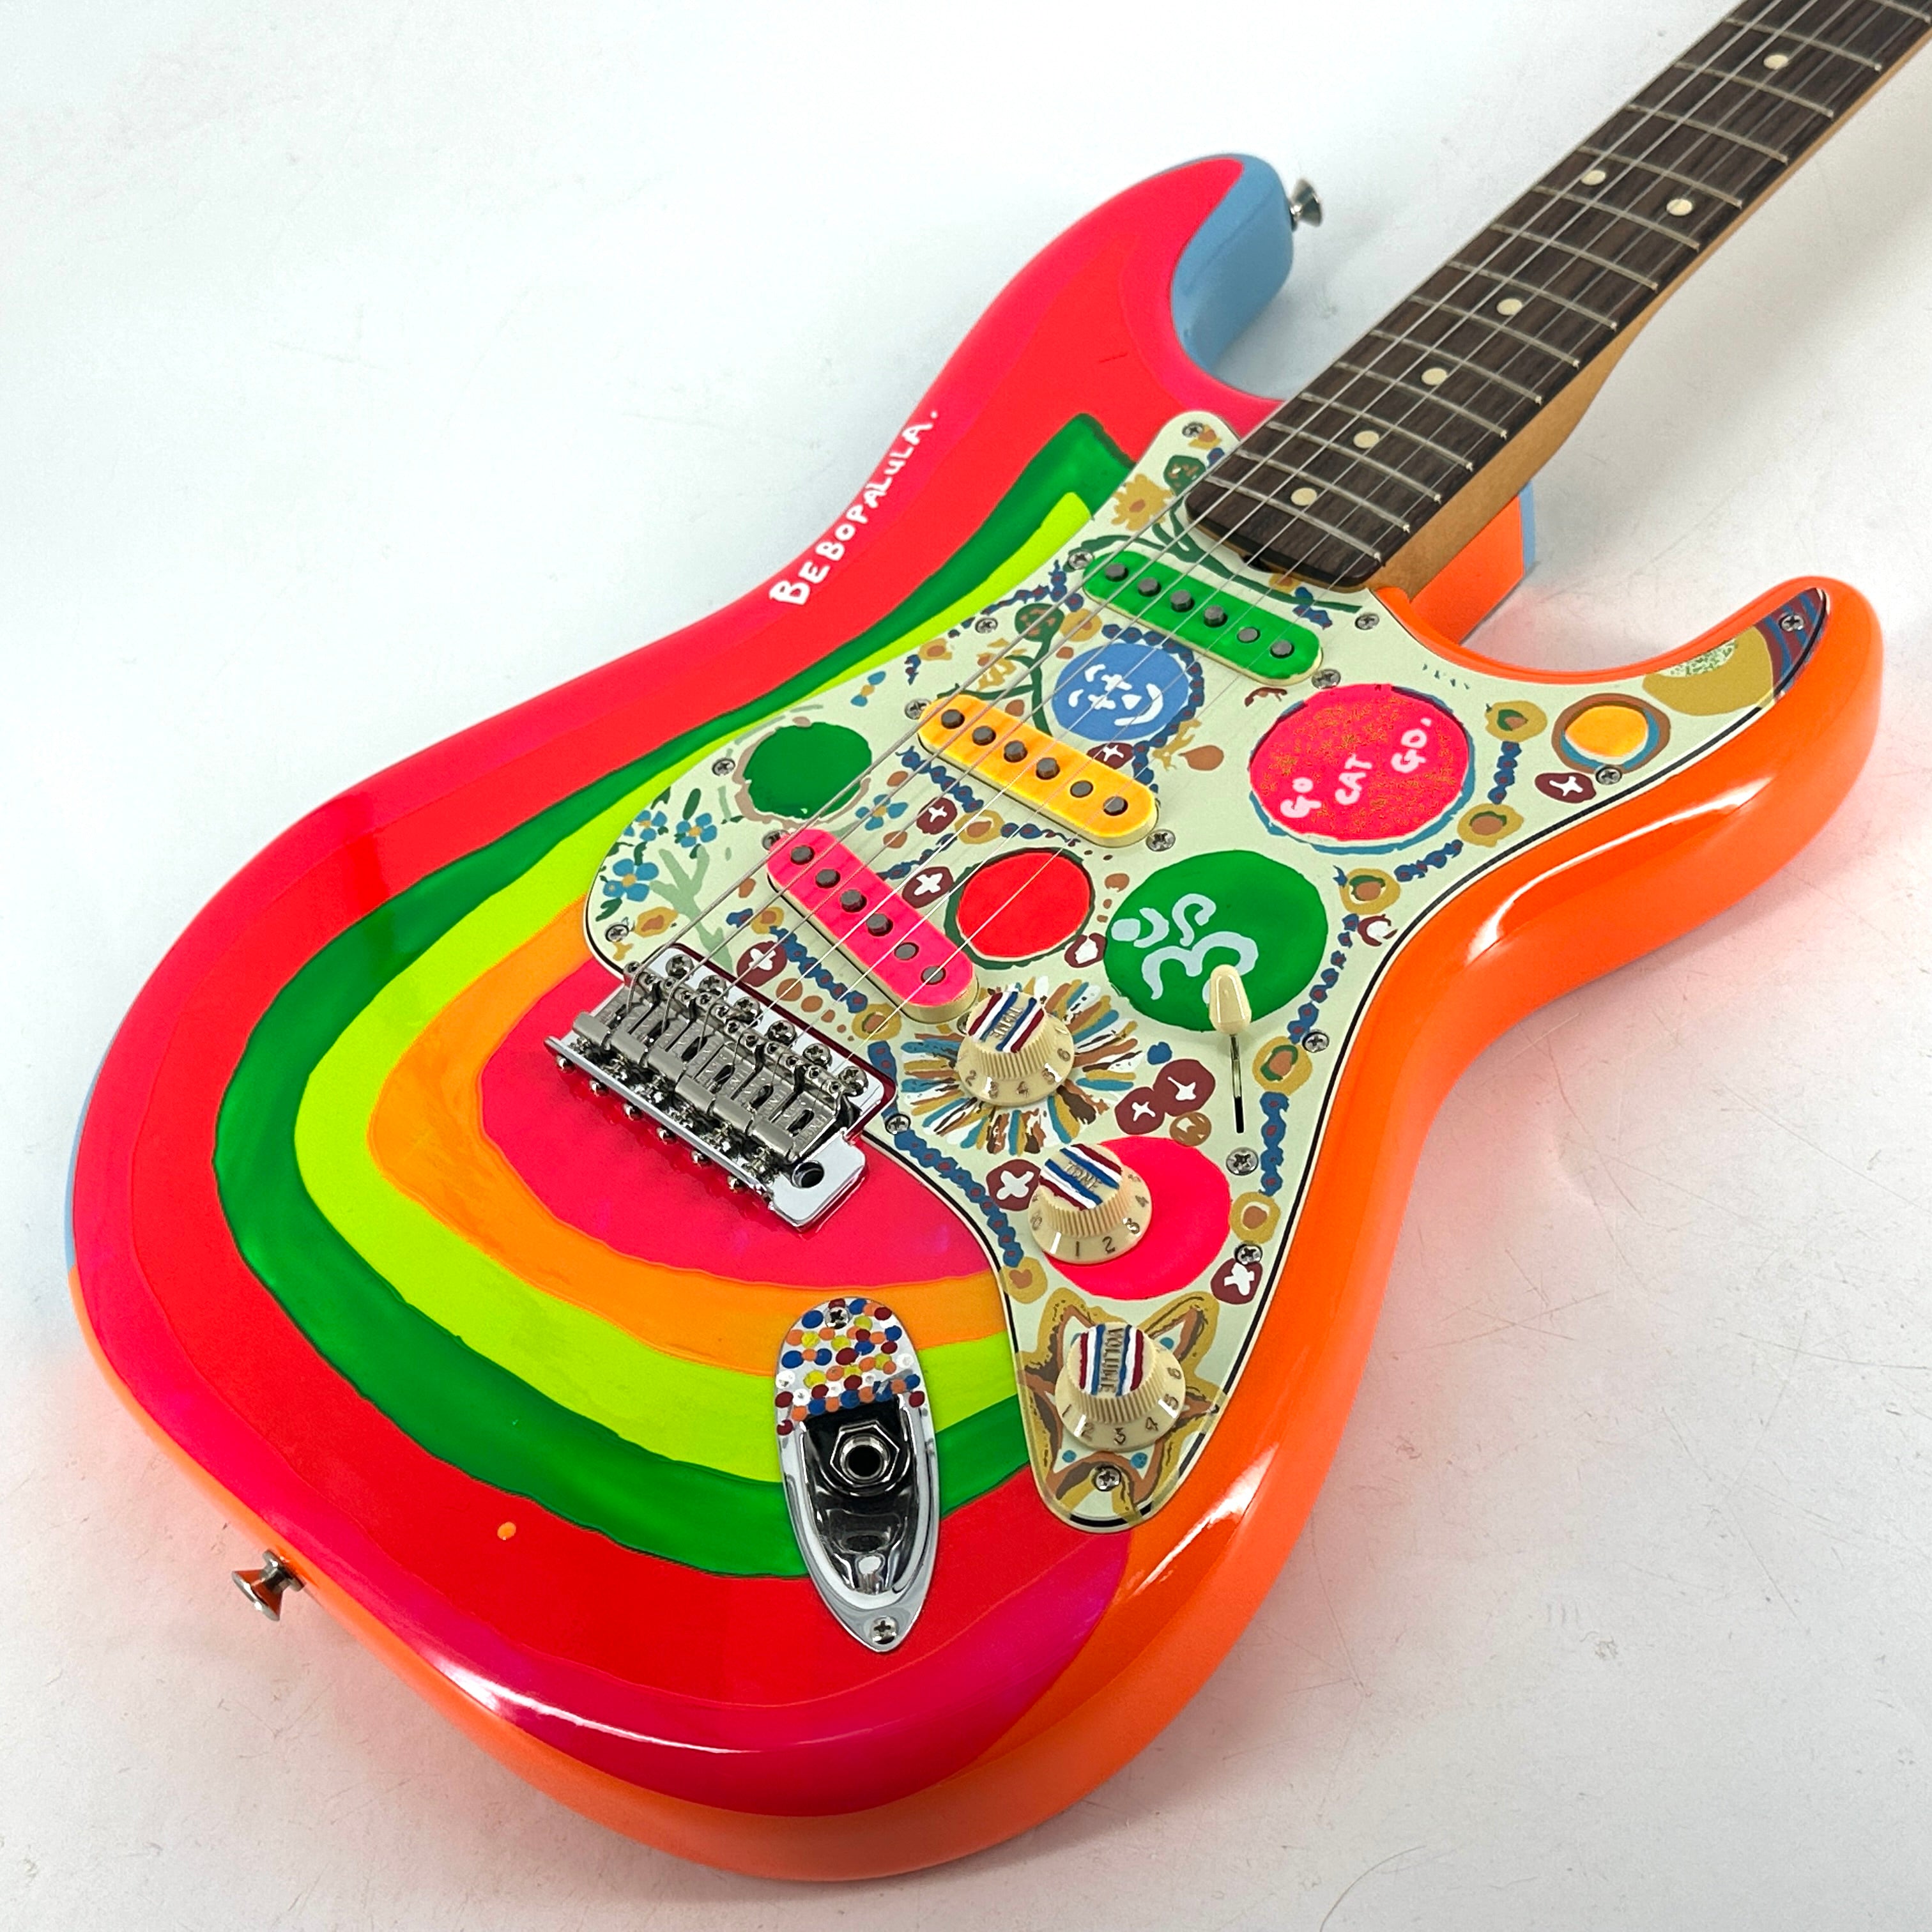 限定版 psychedelic guitars (Stratocaster タイプ) ギター - www ...